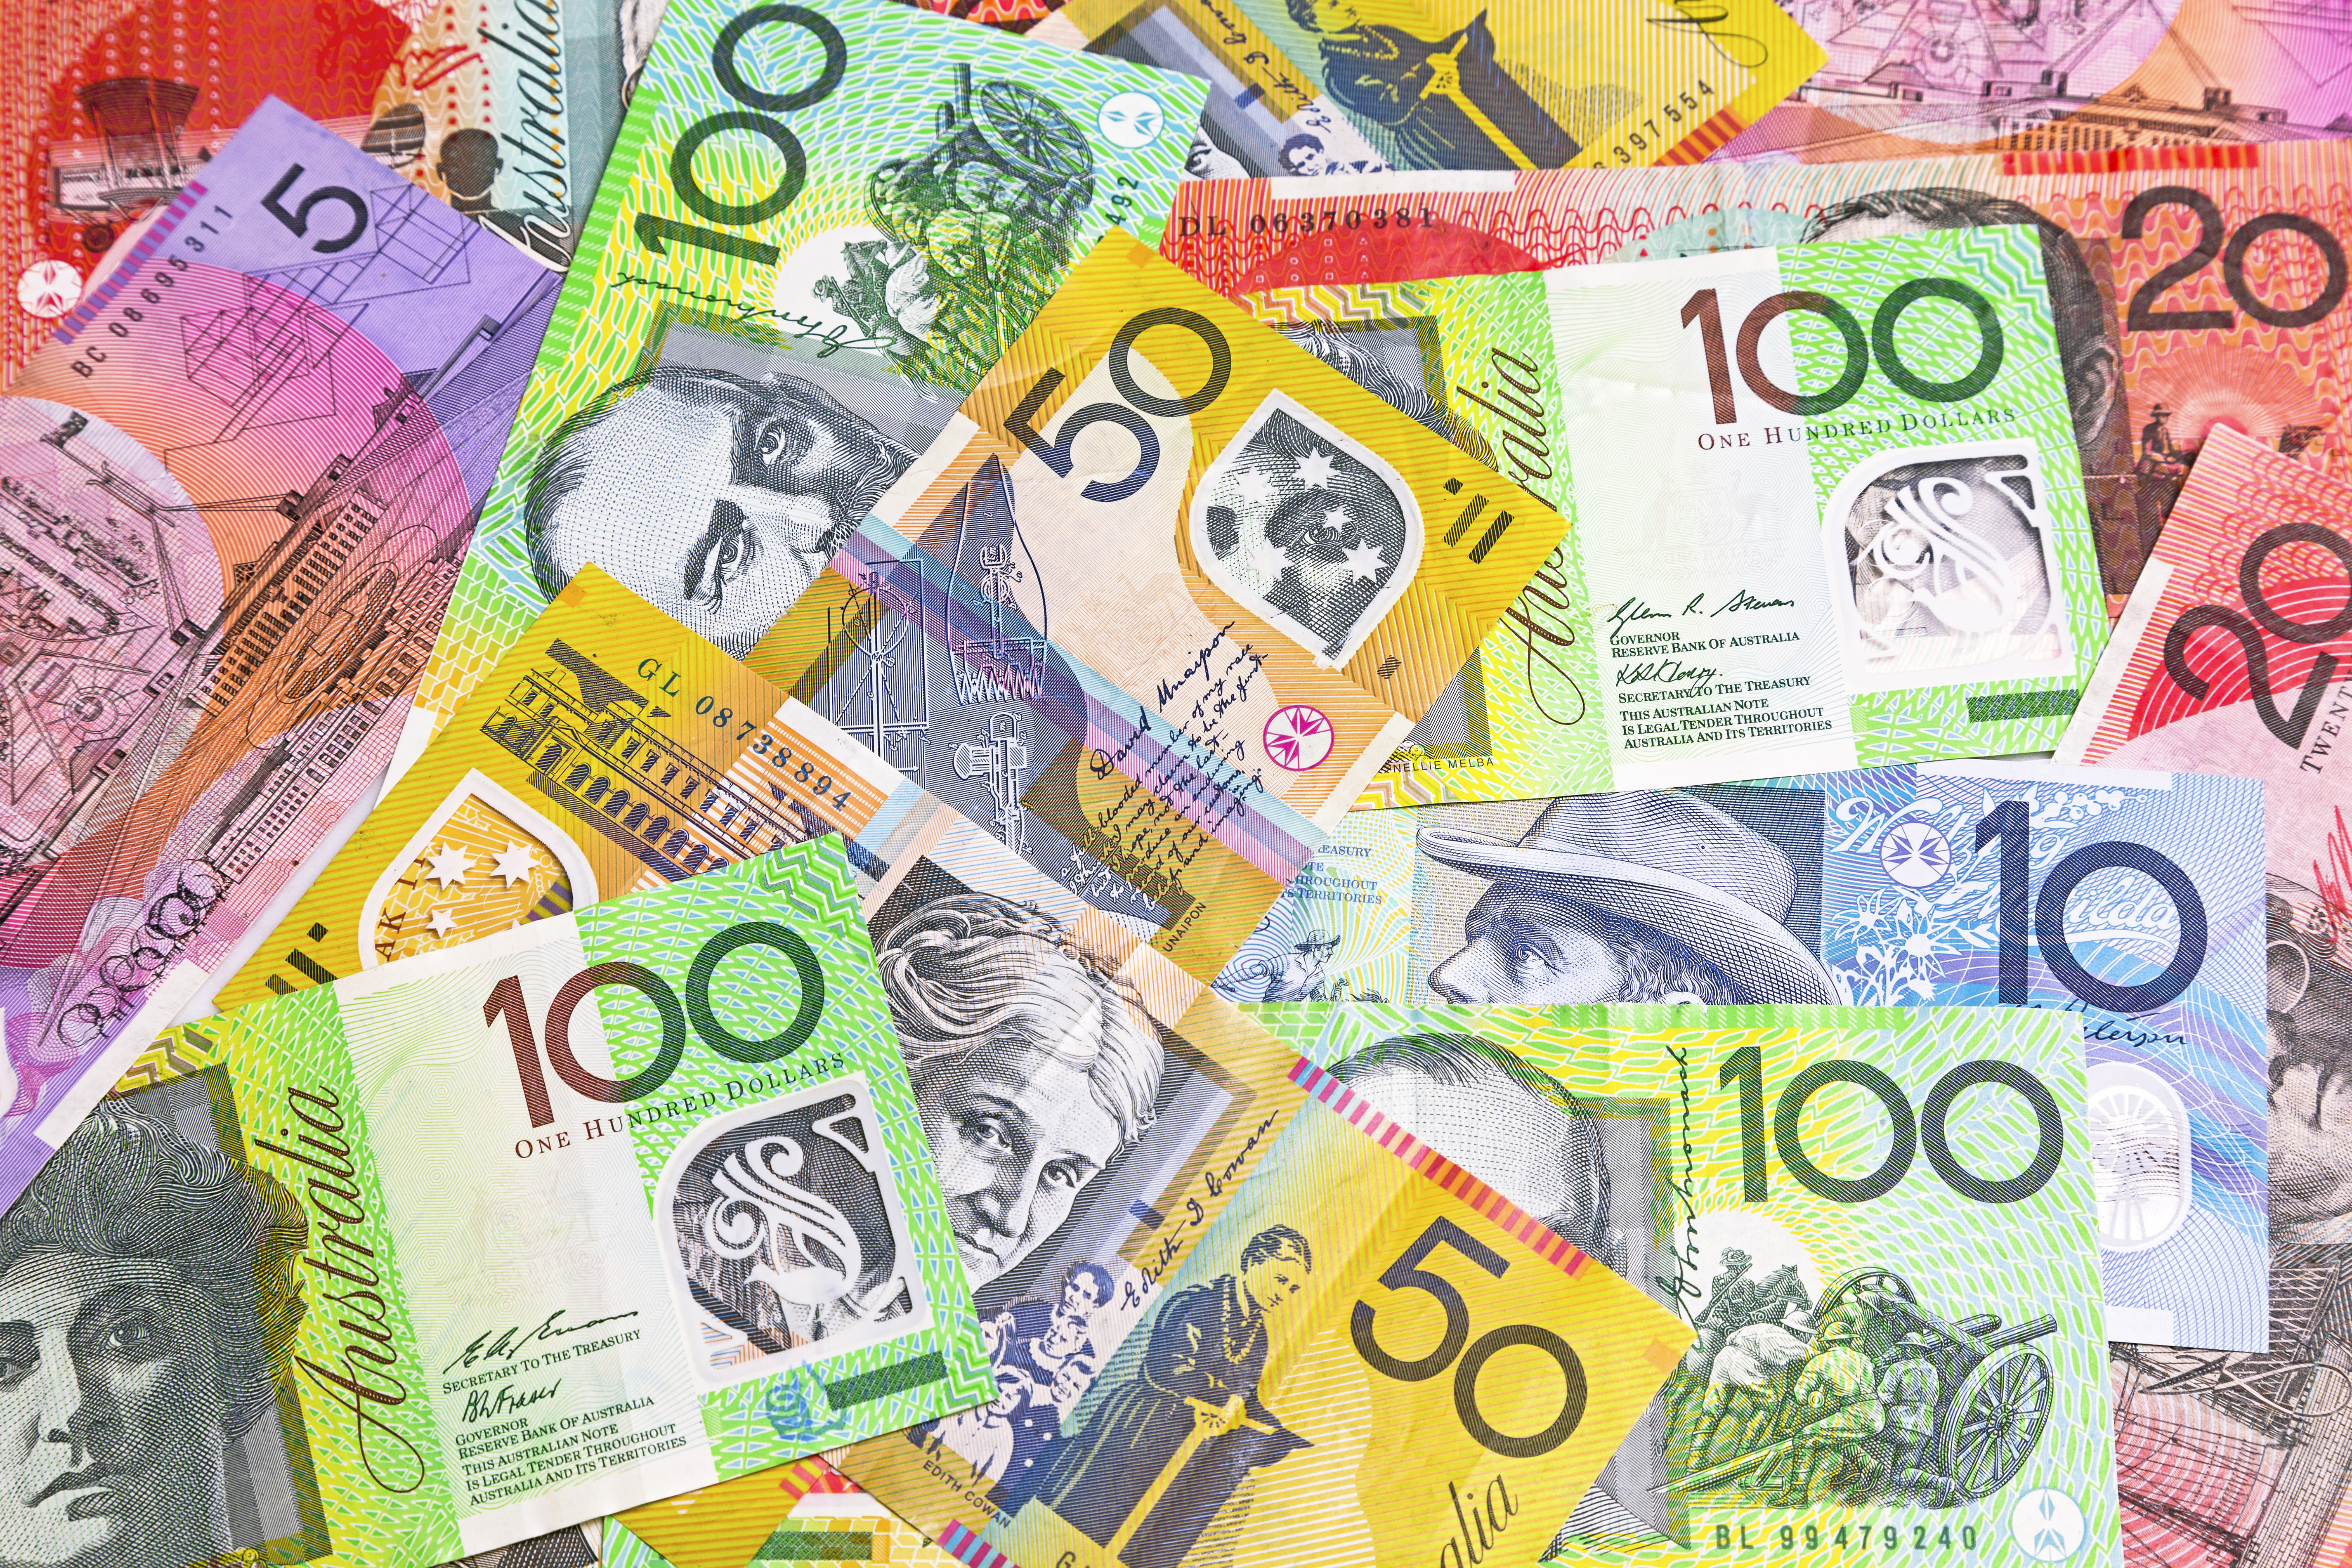 Австралийская валюта. Австралийский доллар. Деньги Австралии. Австралийские банкноты. Австралийский доллар купюры.